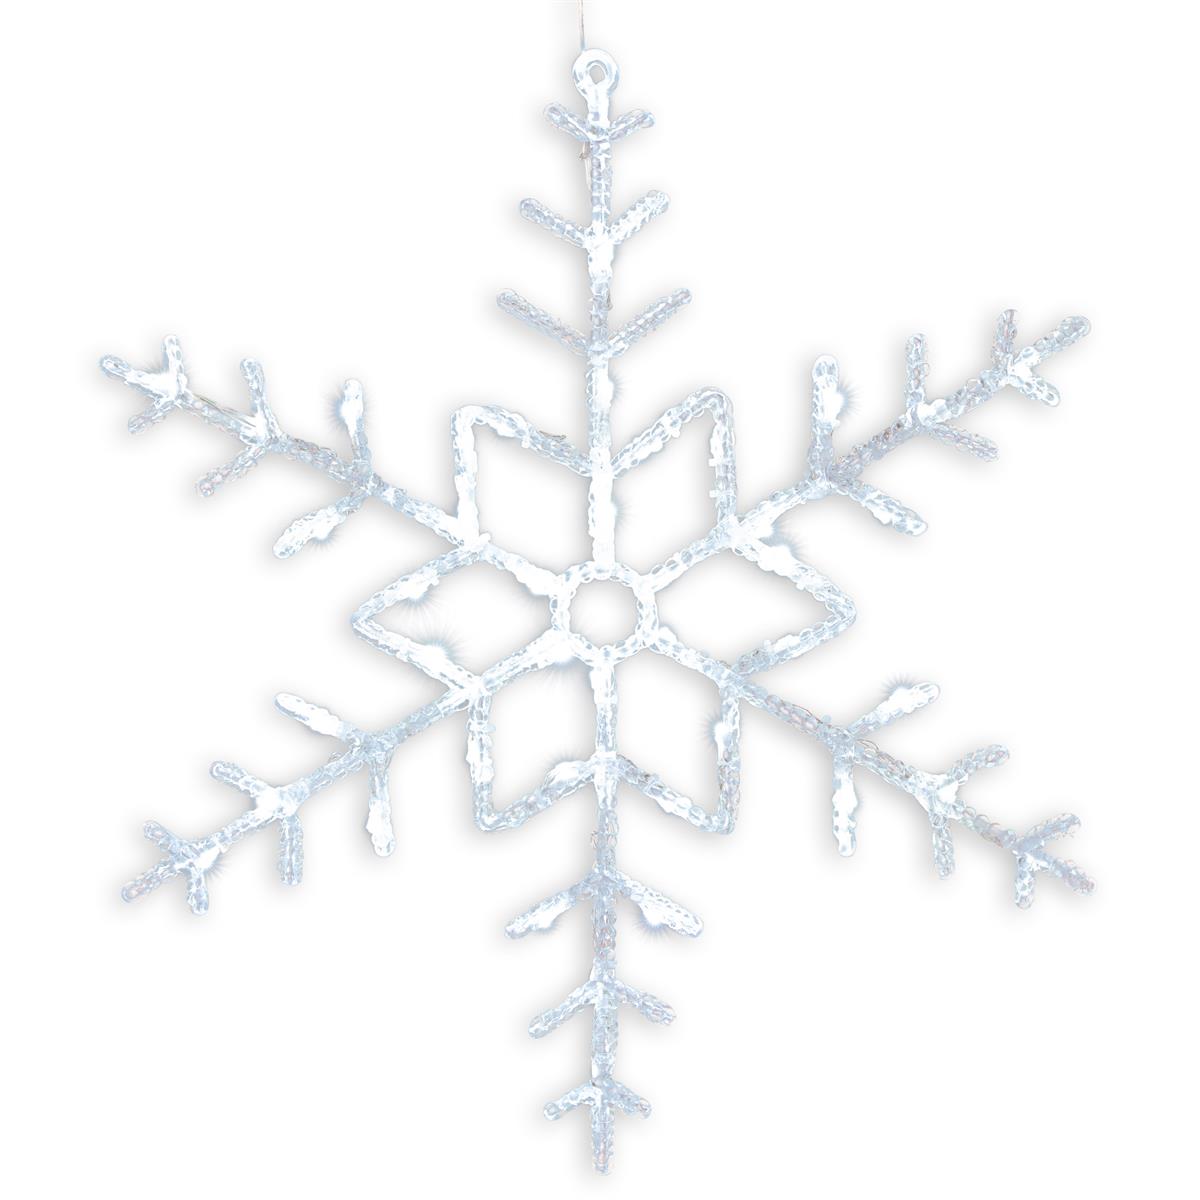 Schneeflocke Acryl 42 LED weiß Ø 55 cm Trafo Timer Weihnachts-Deko Xmas